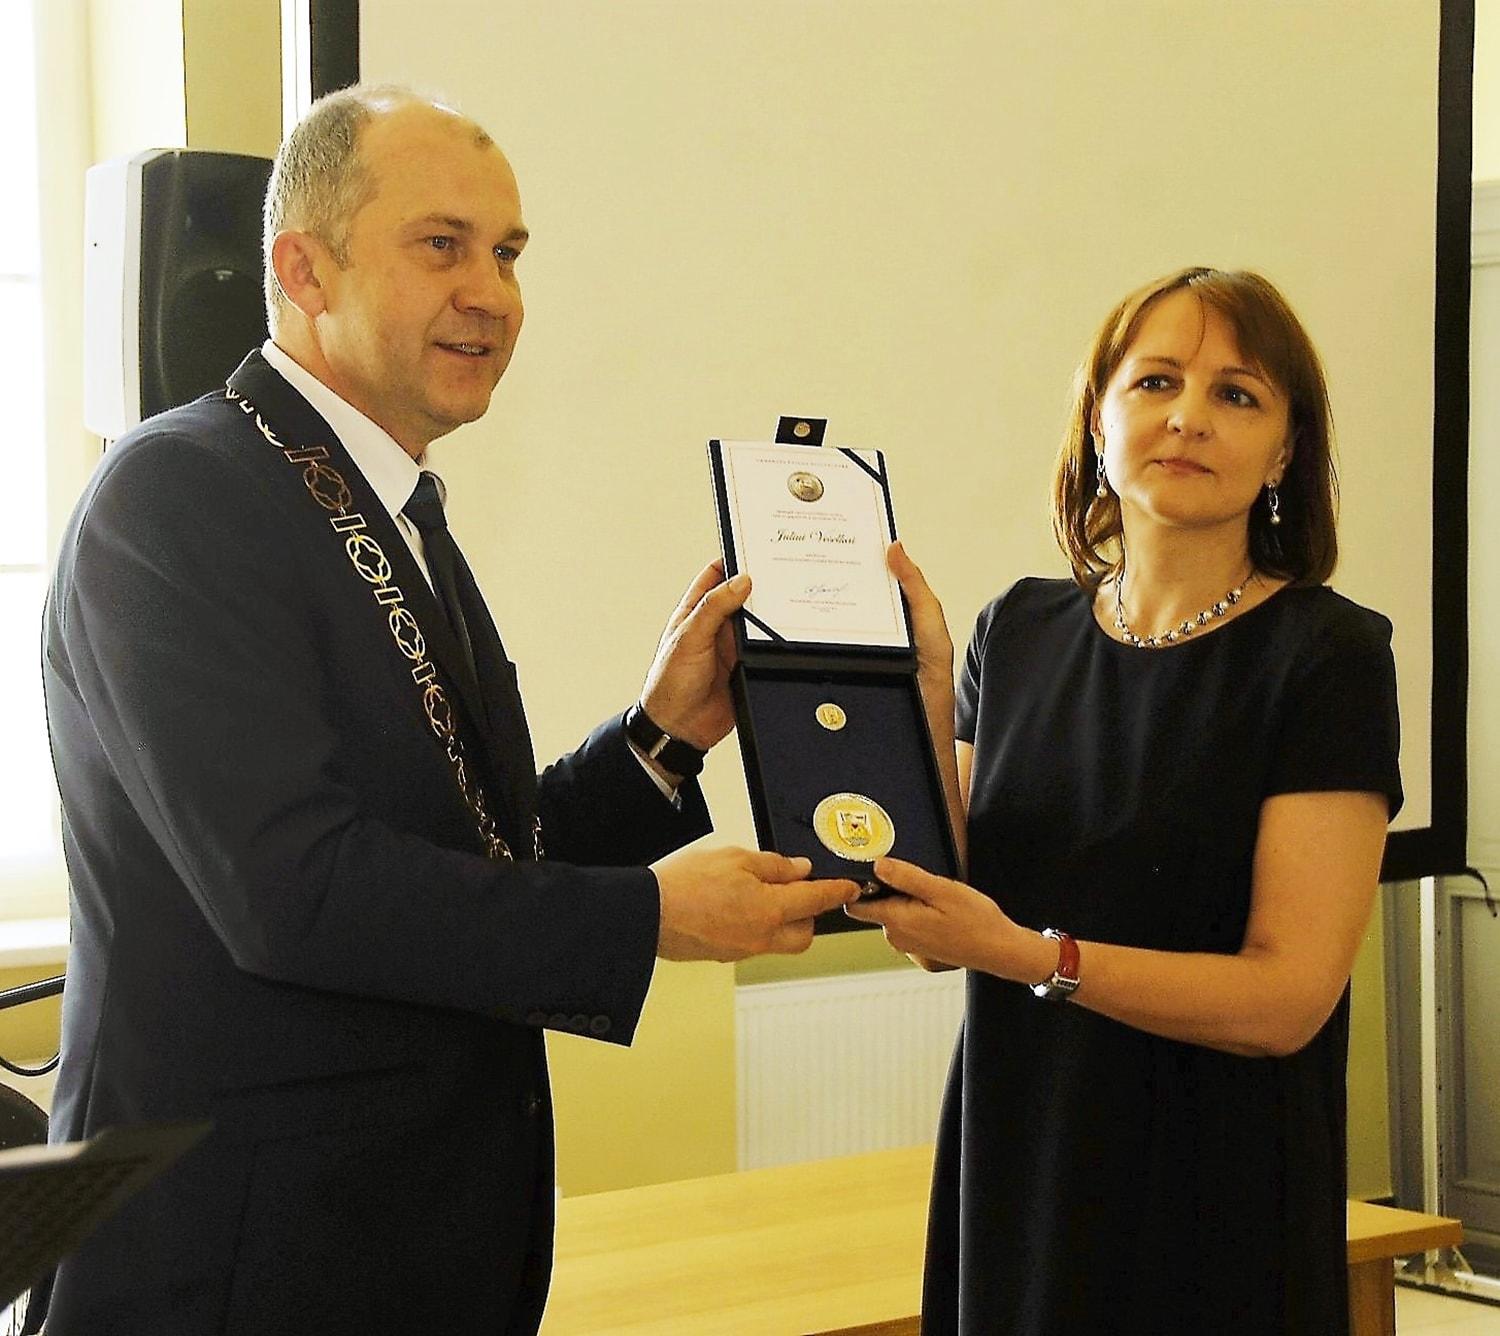 Ukmergės garbės piliečio ženklą atsiėmė dukra / R. Janickas apdovanojimą įteikė J. Veselkos dukrai Daliai. Gedimino Nemunaičio nuotr.